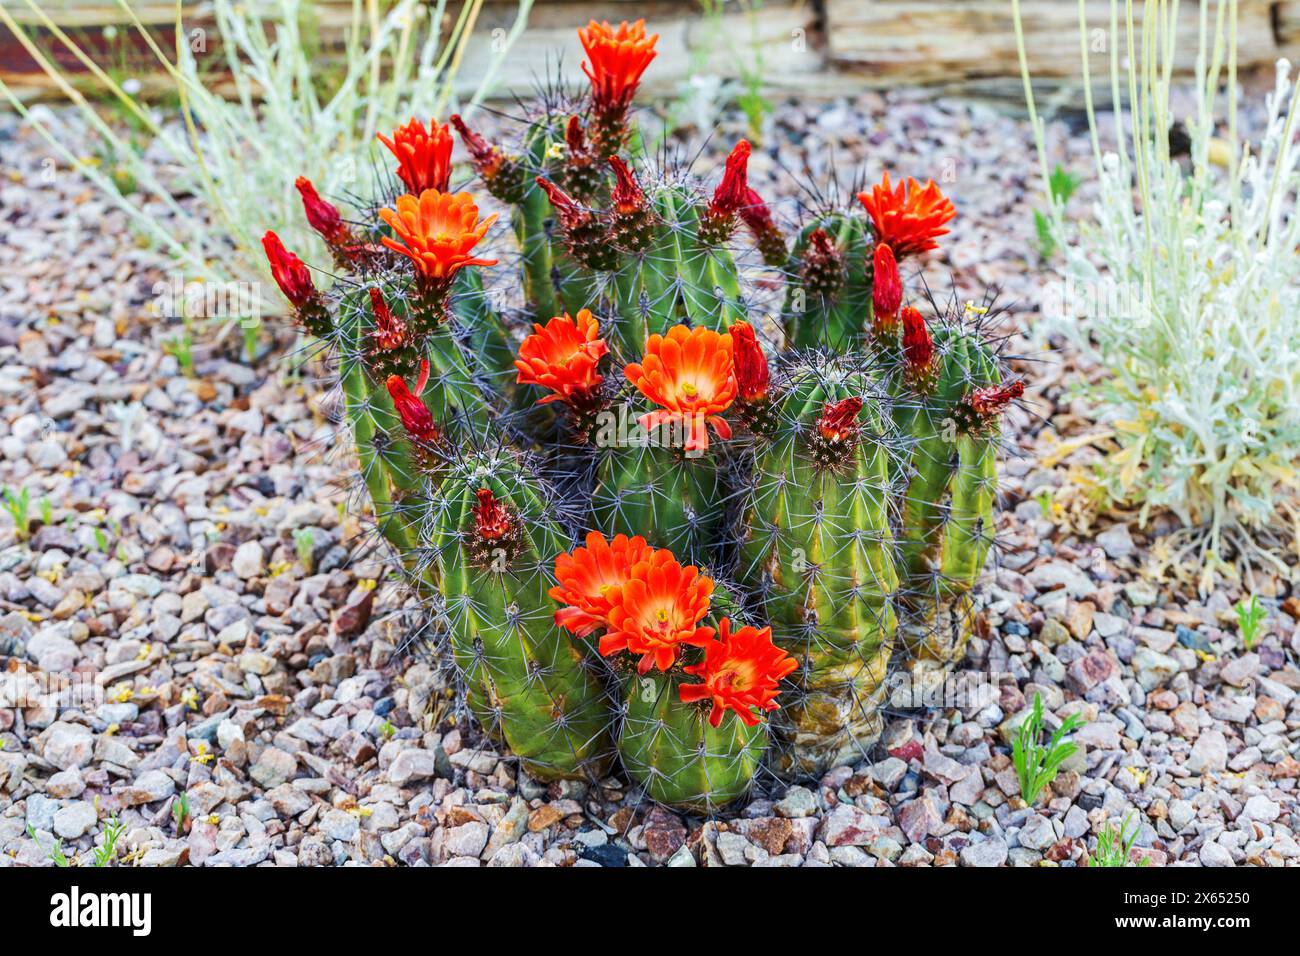 Cactus écarlate Hedgehog en fleurs dans le jardin. Cactus de hérisson en fleurs dans un paysage de jardin rocheux. Kingcup ou Claretcup cactus Echinocereus coccineus Banque D'Images